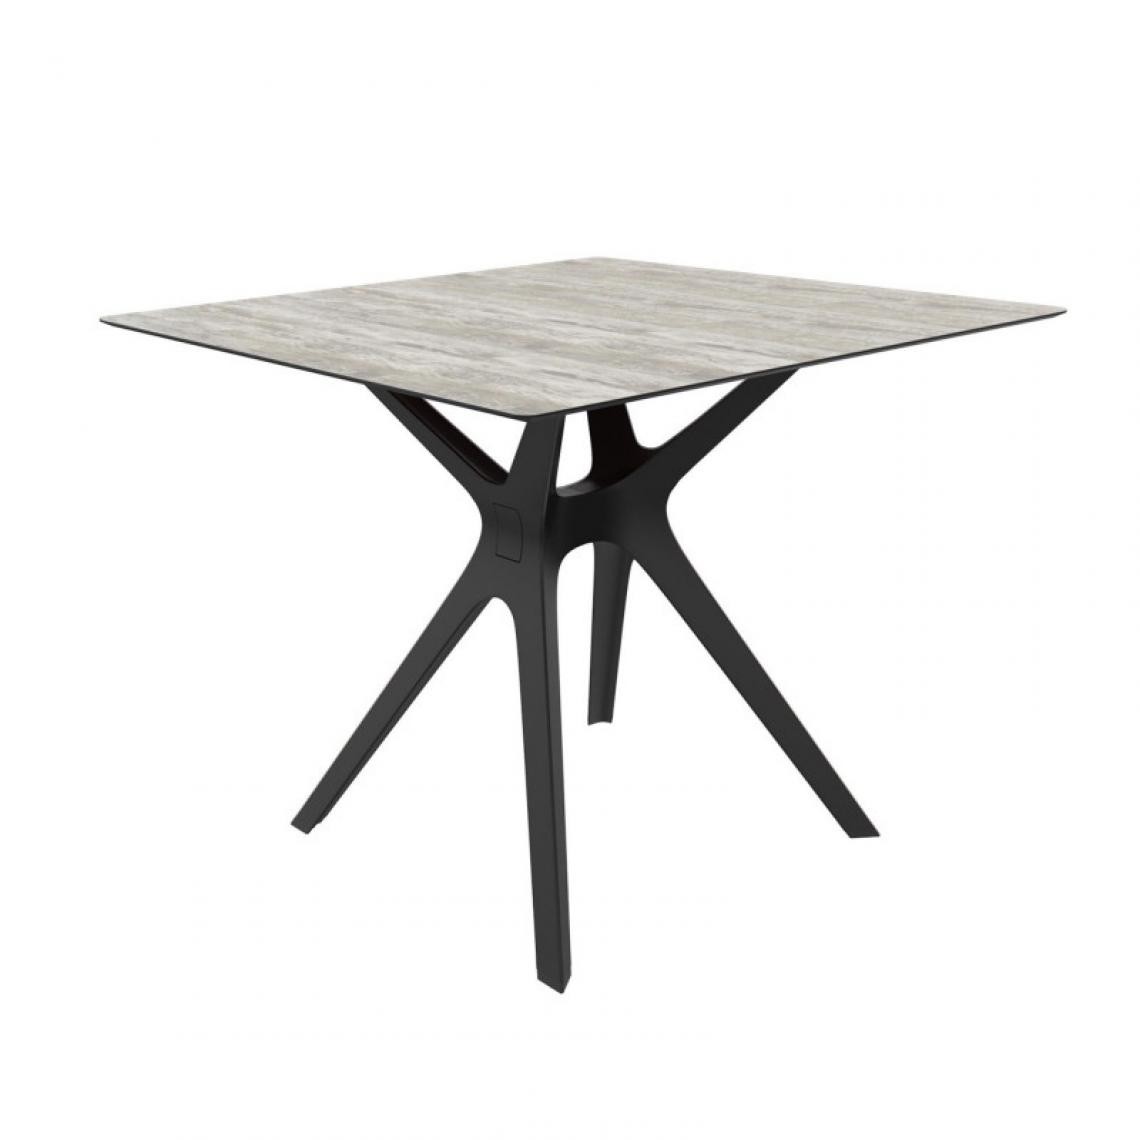 Resol - Table Phenolique 90x90 Pied De Table Vela "s" - Resol - Pied Noir - Planche En Bois LavéAluminium, phénolique compact, fibre de ve - Tables à manger